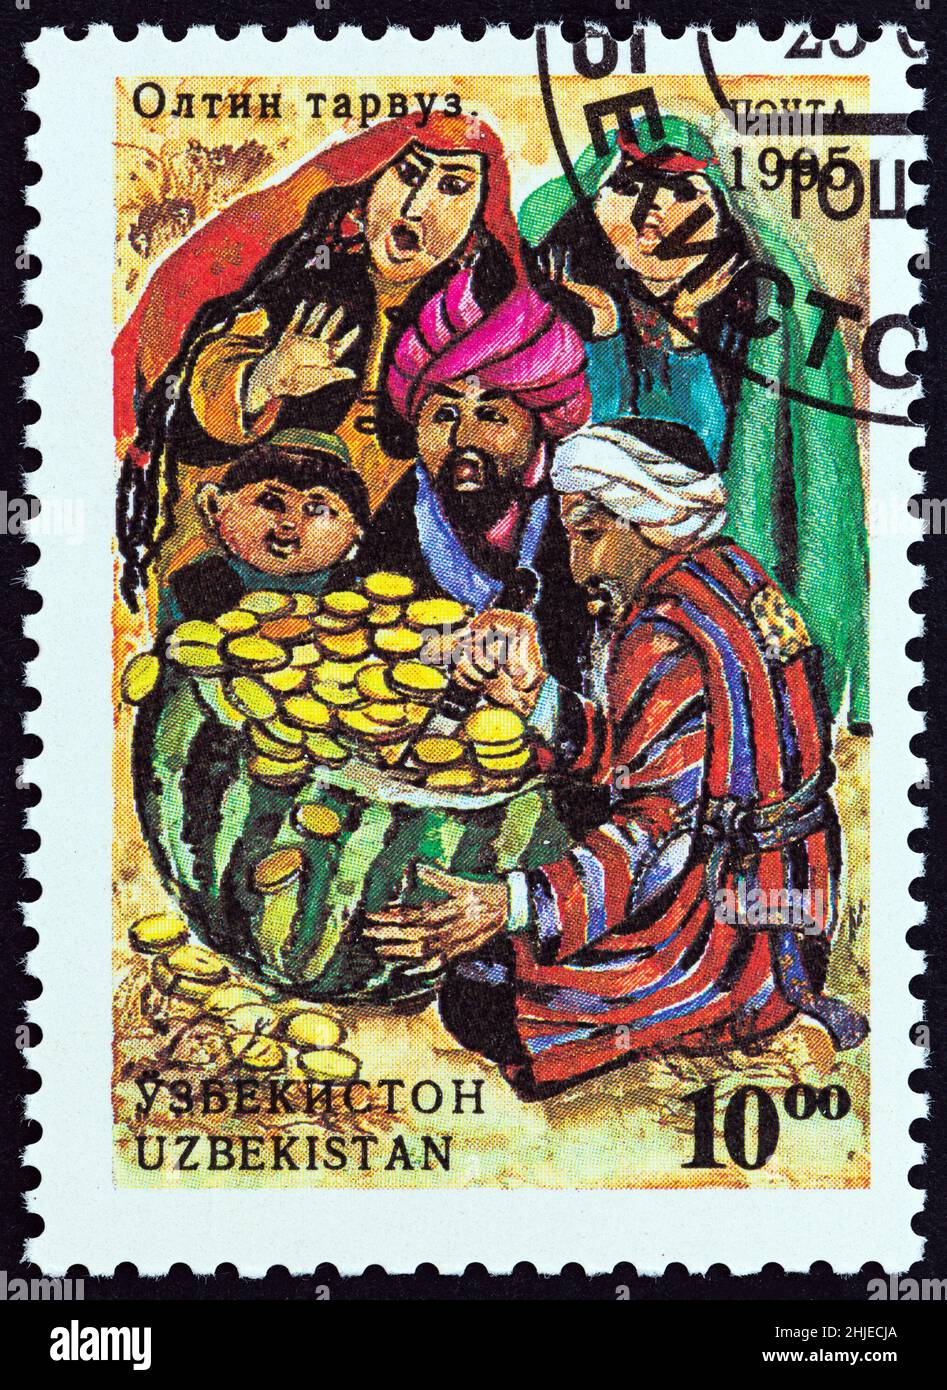 USBEKISTAN - UM 1995: Eine in Usbekistan gedruckte Briefmarke aus der Ausgabe 'Folktales' zeigt die Goldene Melone, um 1995. Stockfoto